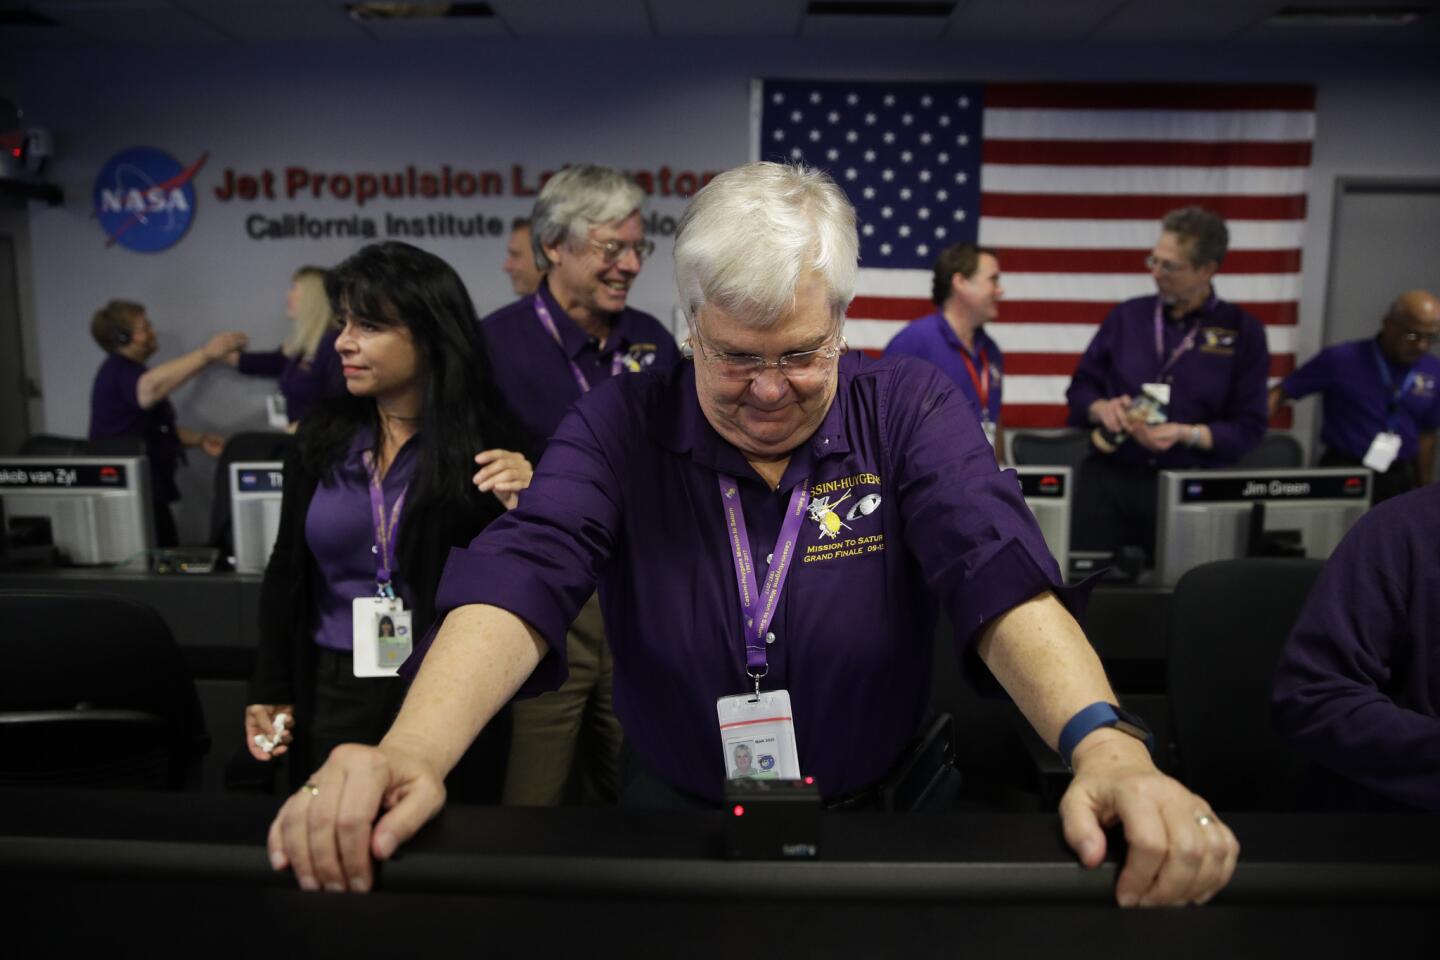 Flight director Julie Webster gets emotional in Mission Control at NASA's Jet Propulsion Laboratory after confirmation of Cassini's demise.